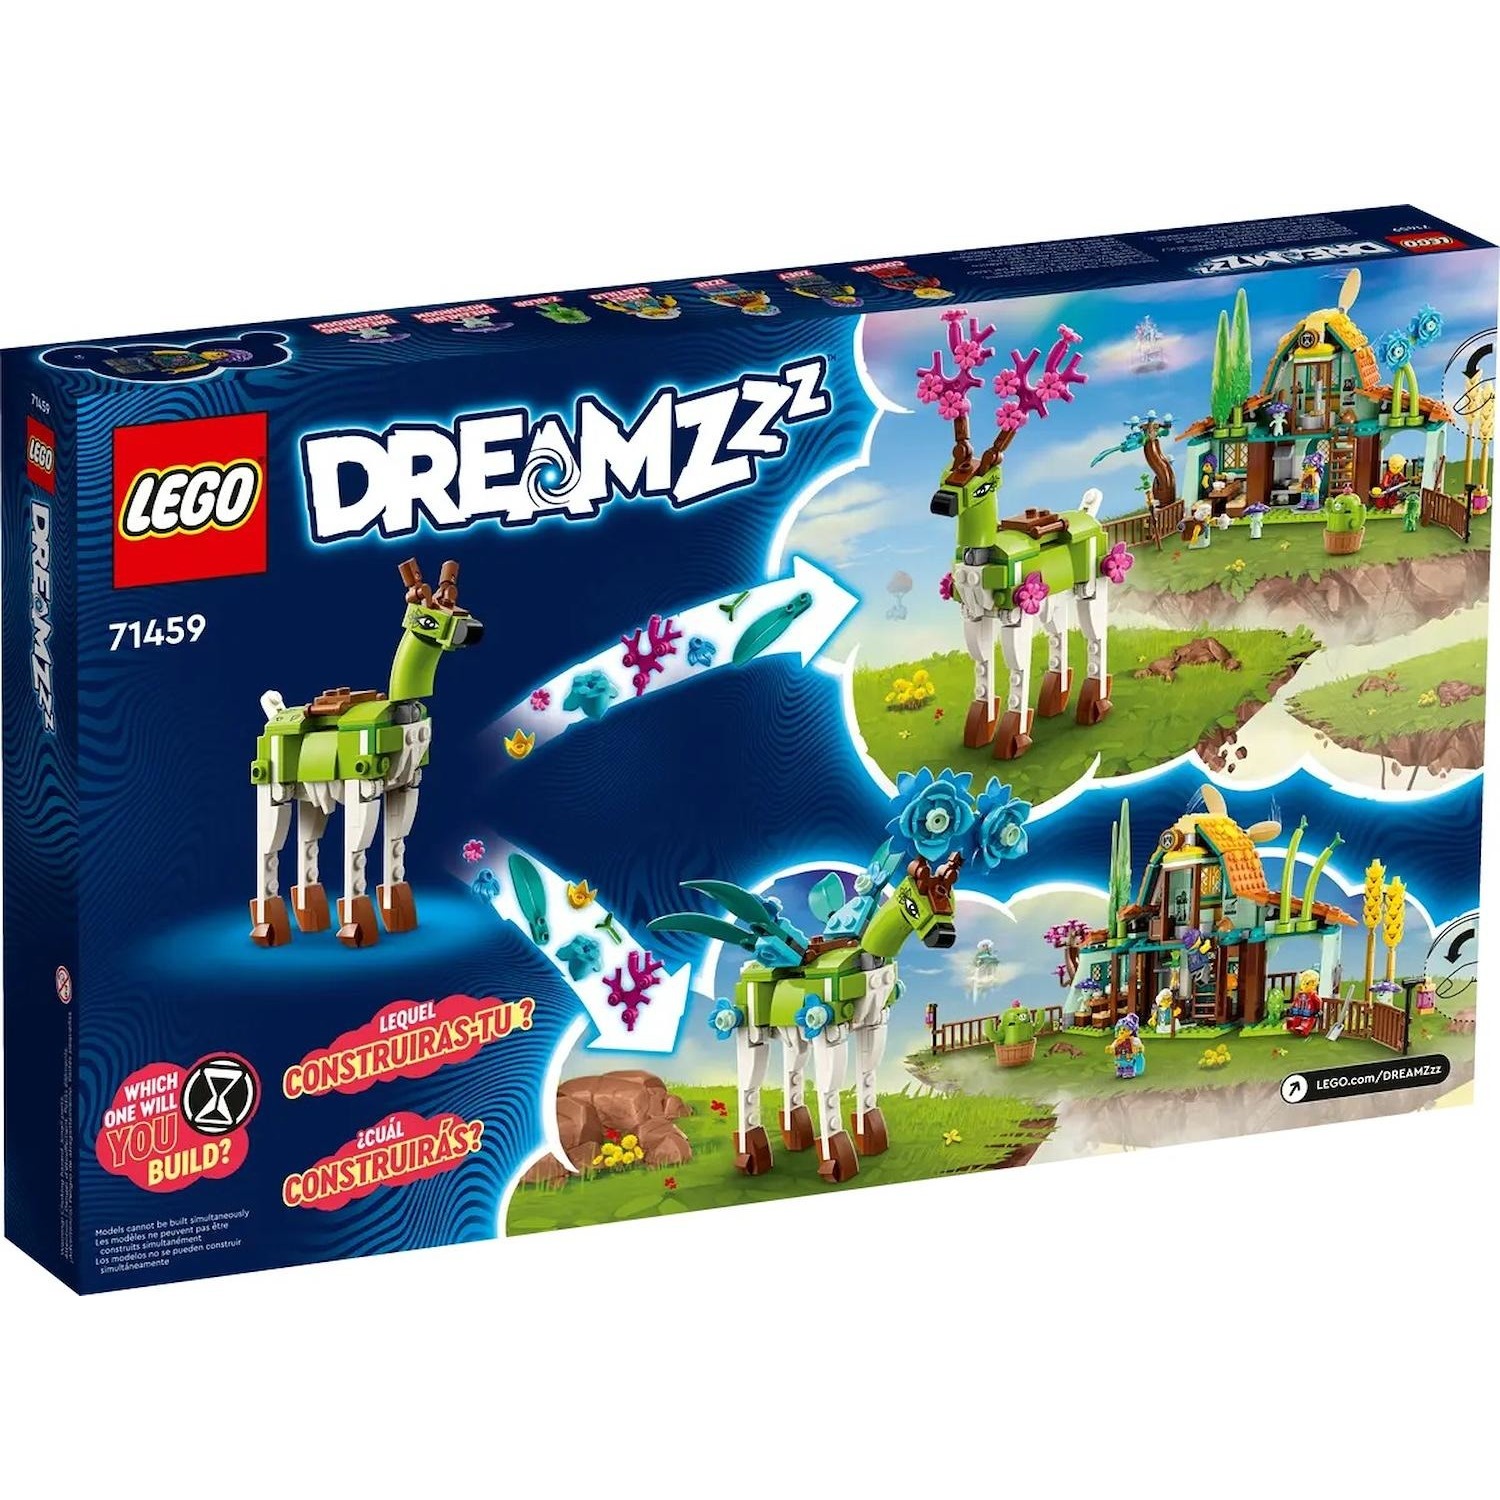 Immagine per Lego Dreamzzz Scuderia delle Creature dei Sogni da DIMOStore